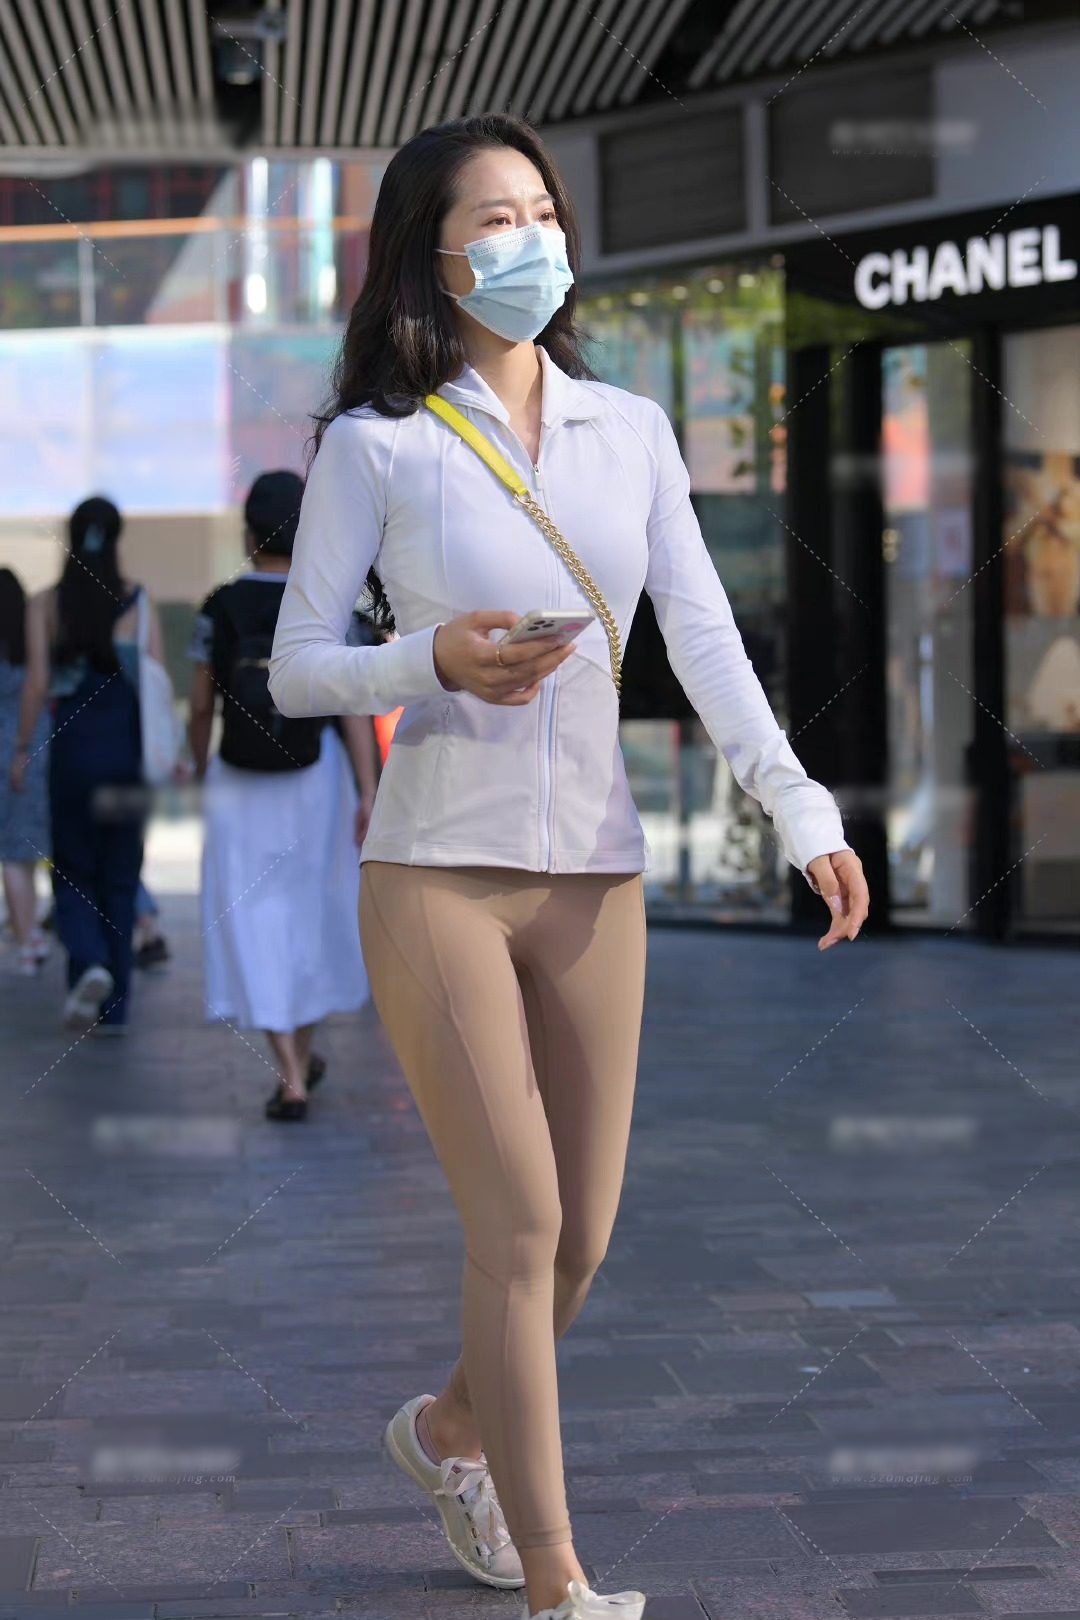 Người đẹp đường phố diện chiếc quần legging màu nude xuống đường (nguồn: Weibo - Chụp ảnh đường phố không cần chỉnh sửa)